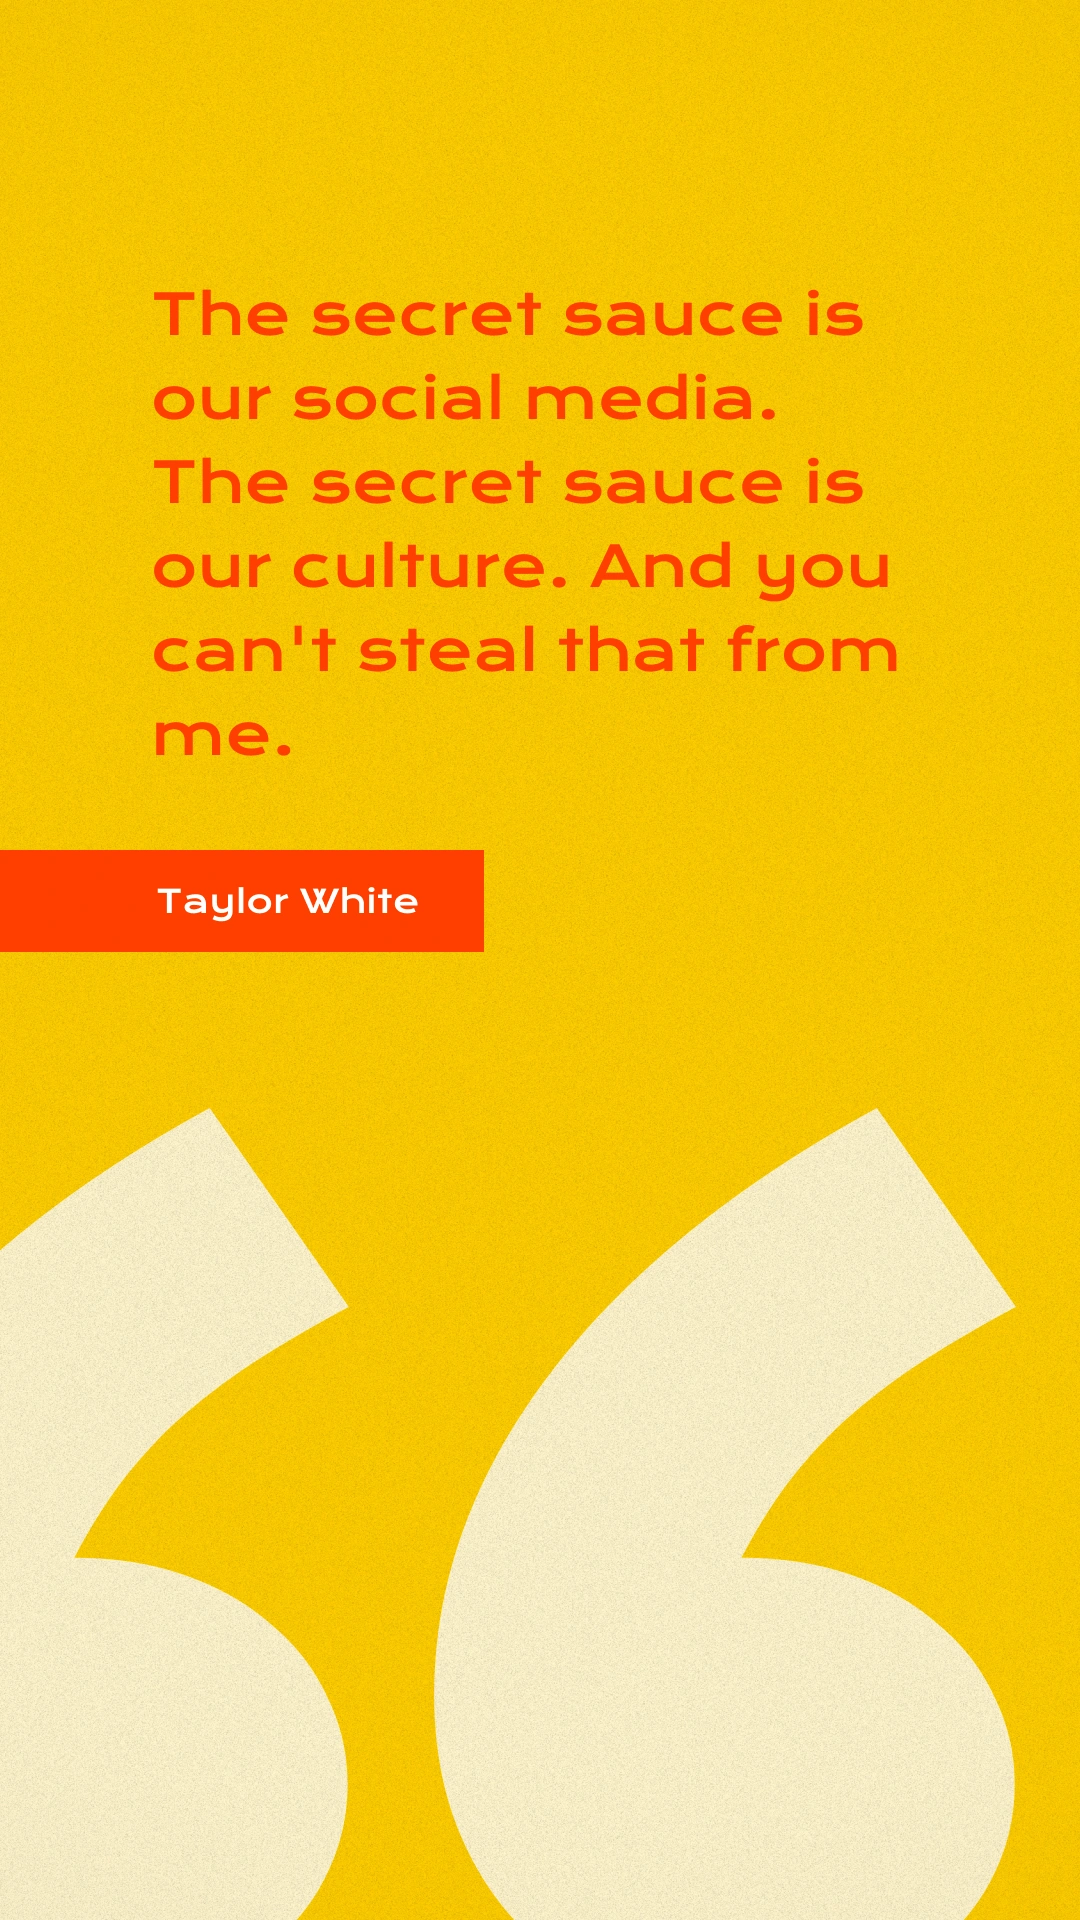 Taylor White podcast quote: &quot;The secret sauce is our social media. The secret sauce is our culture&quot;